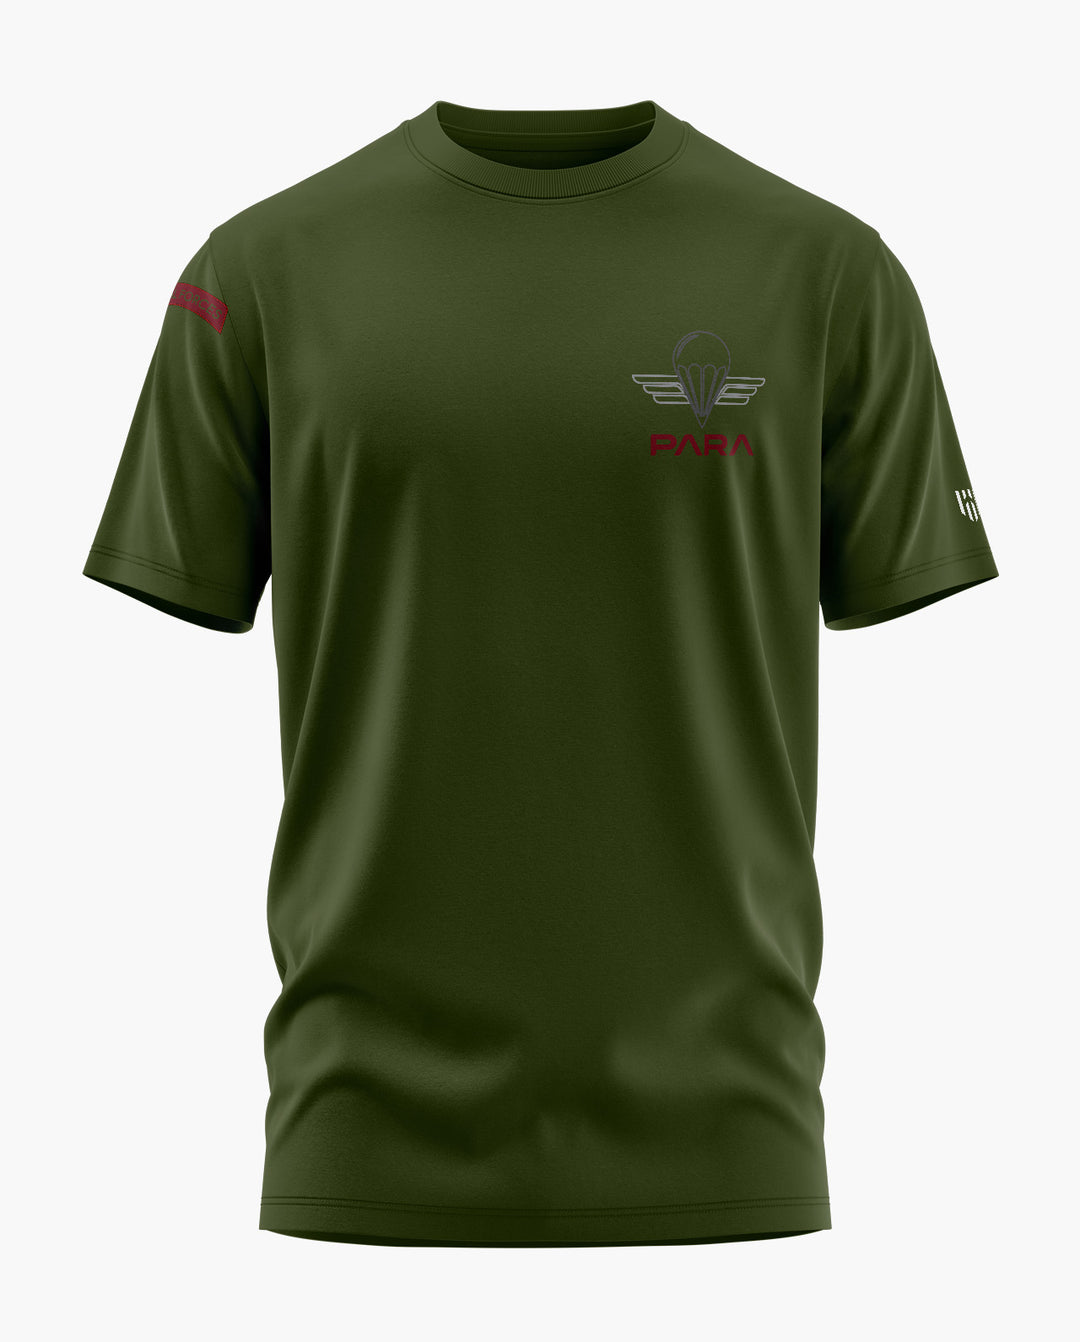 PARA Special Forces T-Shirt - Aero Armour